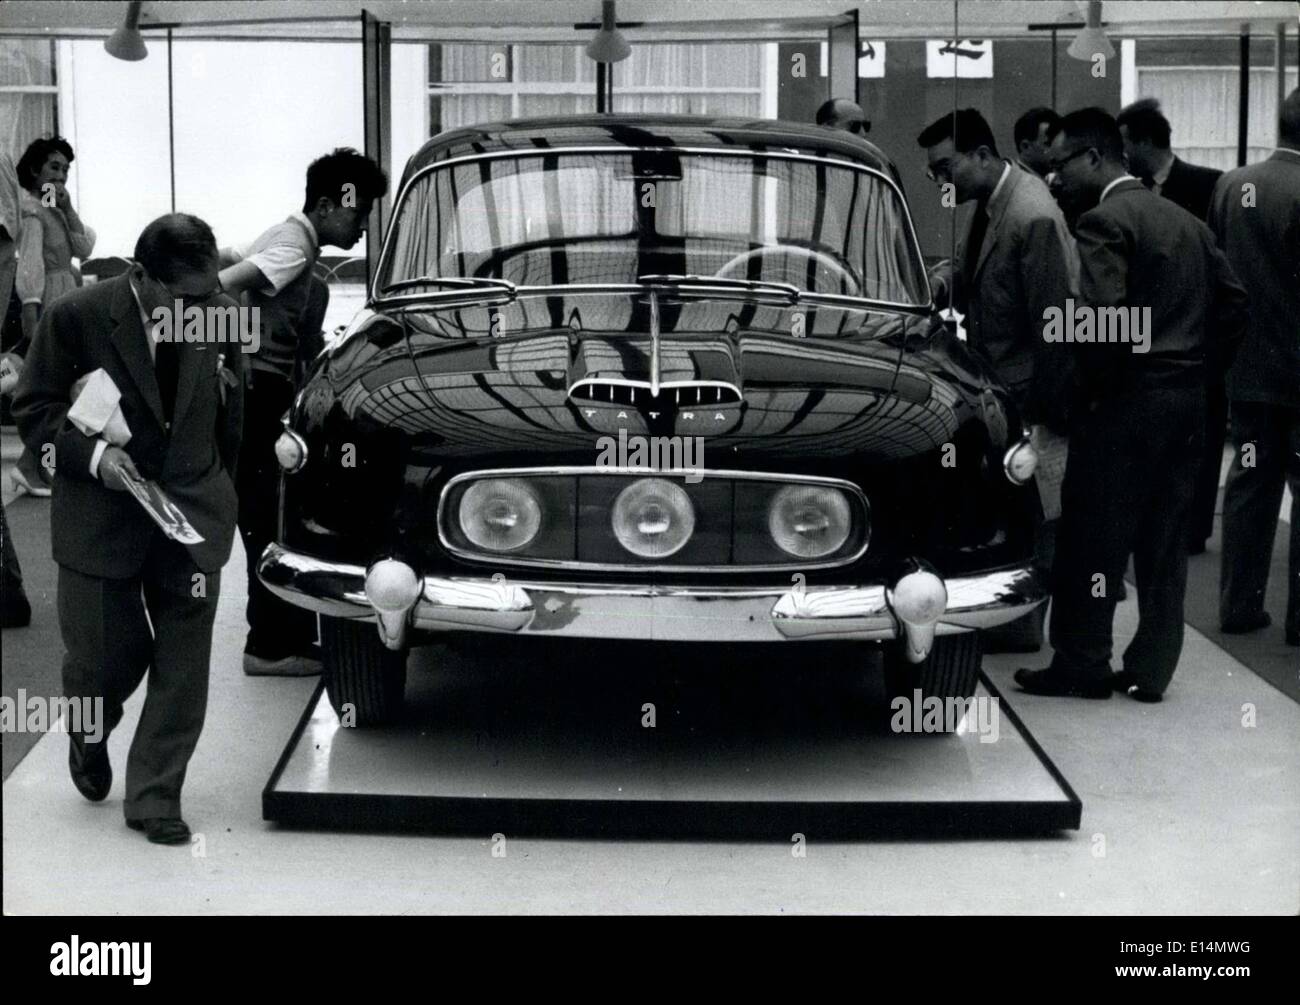 5. April 2012 - Tokyo Trade fair öffnet: Tschechoslowakei der neuesten Auto '' Tatra'' auf Ausstellung auf der Tokio Messe, die gestern eröffnet hat 3 vorderen Scheinwerfer. Die Messe ist offen für 18 Tage bei Harumi und umfasst 213,000 qm. Stockfoto